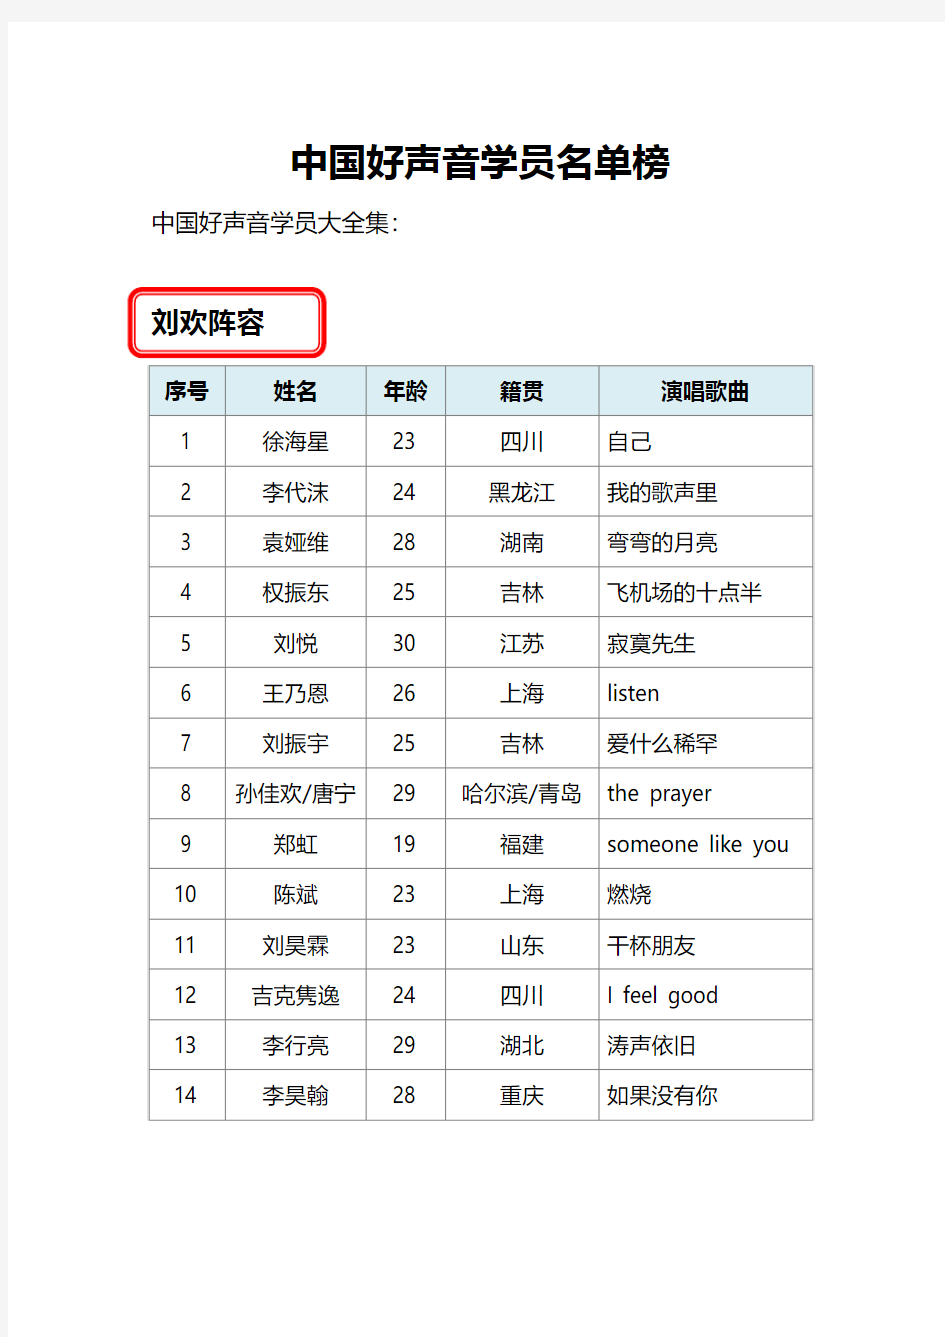 中国好声音学员名单全部阵容